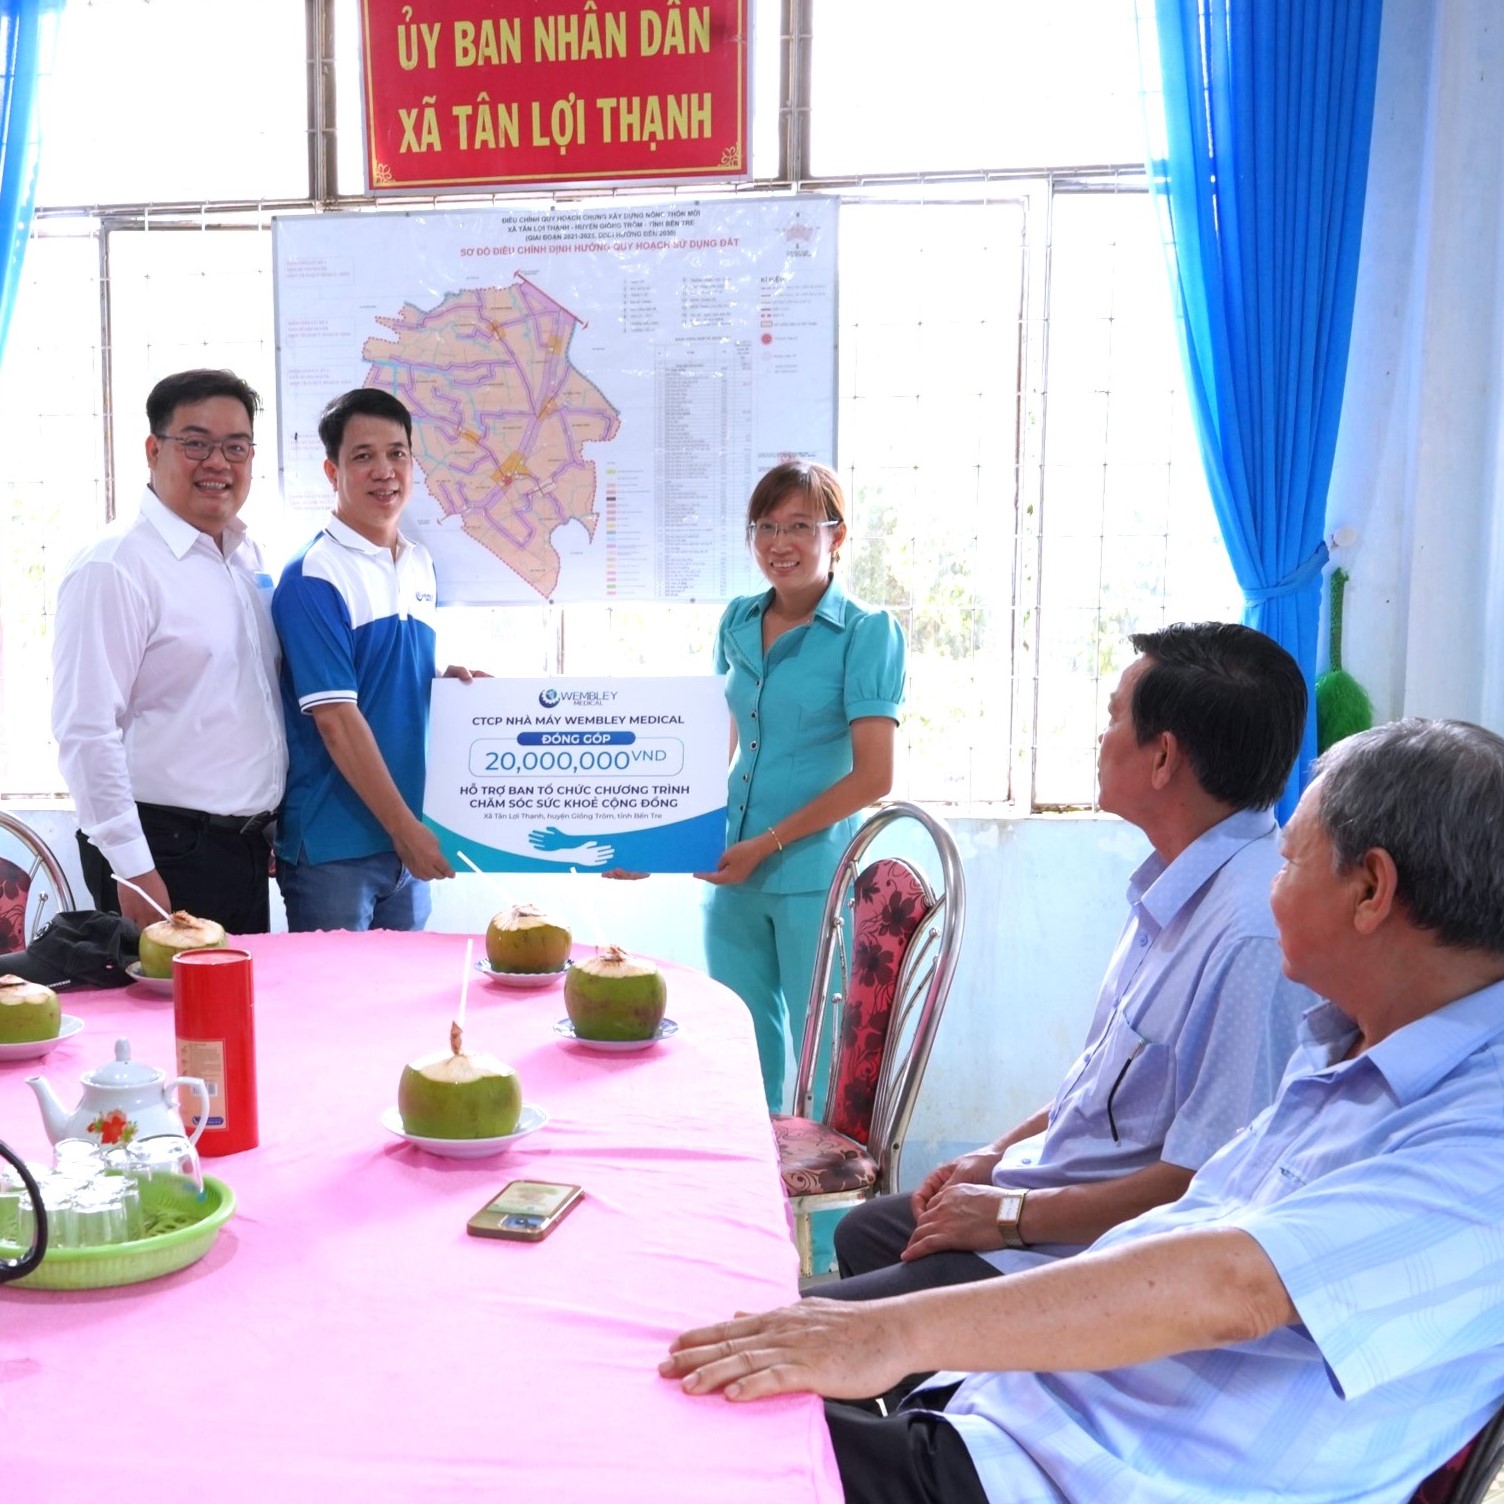 WEMBLEY MEDICAL đồng hành cùng Bệnh viện Đại học Y Dược TP.HCM chăm sóc sức khỏe cho người dân tại huyện Giồng Trôm - tỉnh Bến Tre